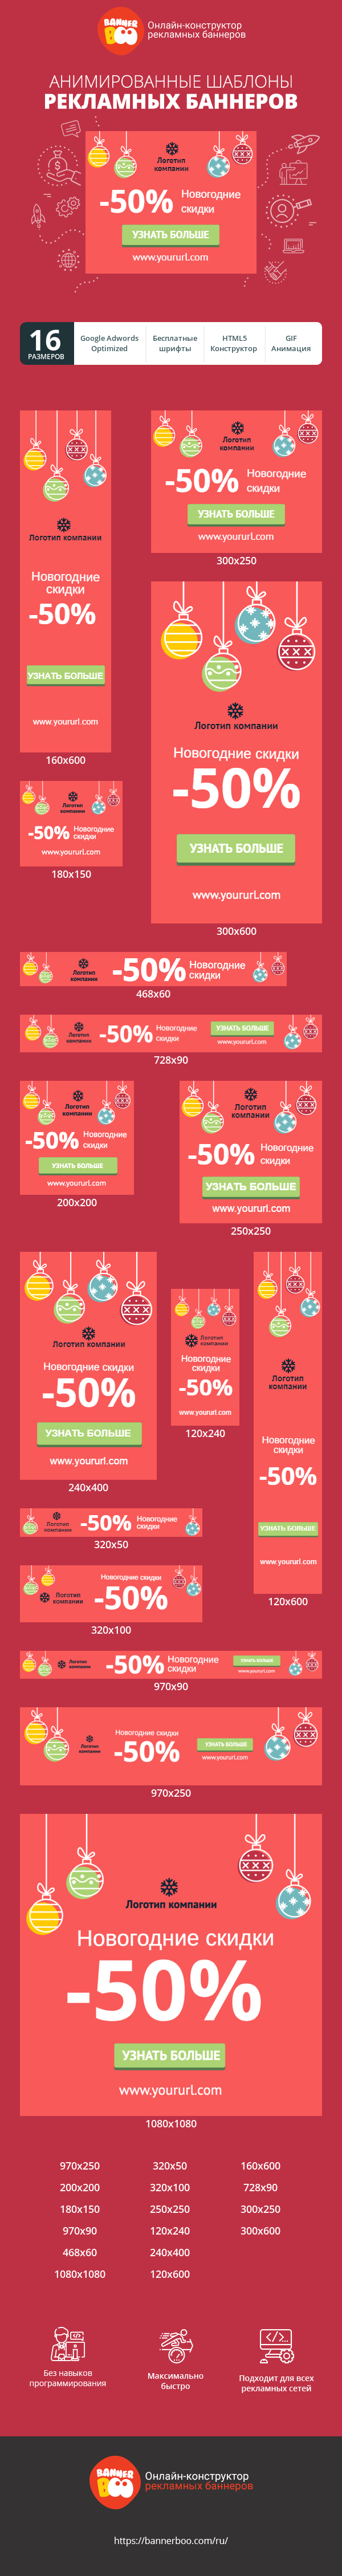 Шаблон рекламного баннера — Новогодние скидки -50%